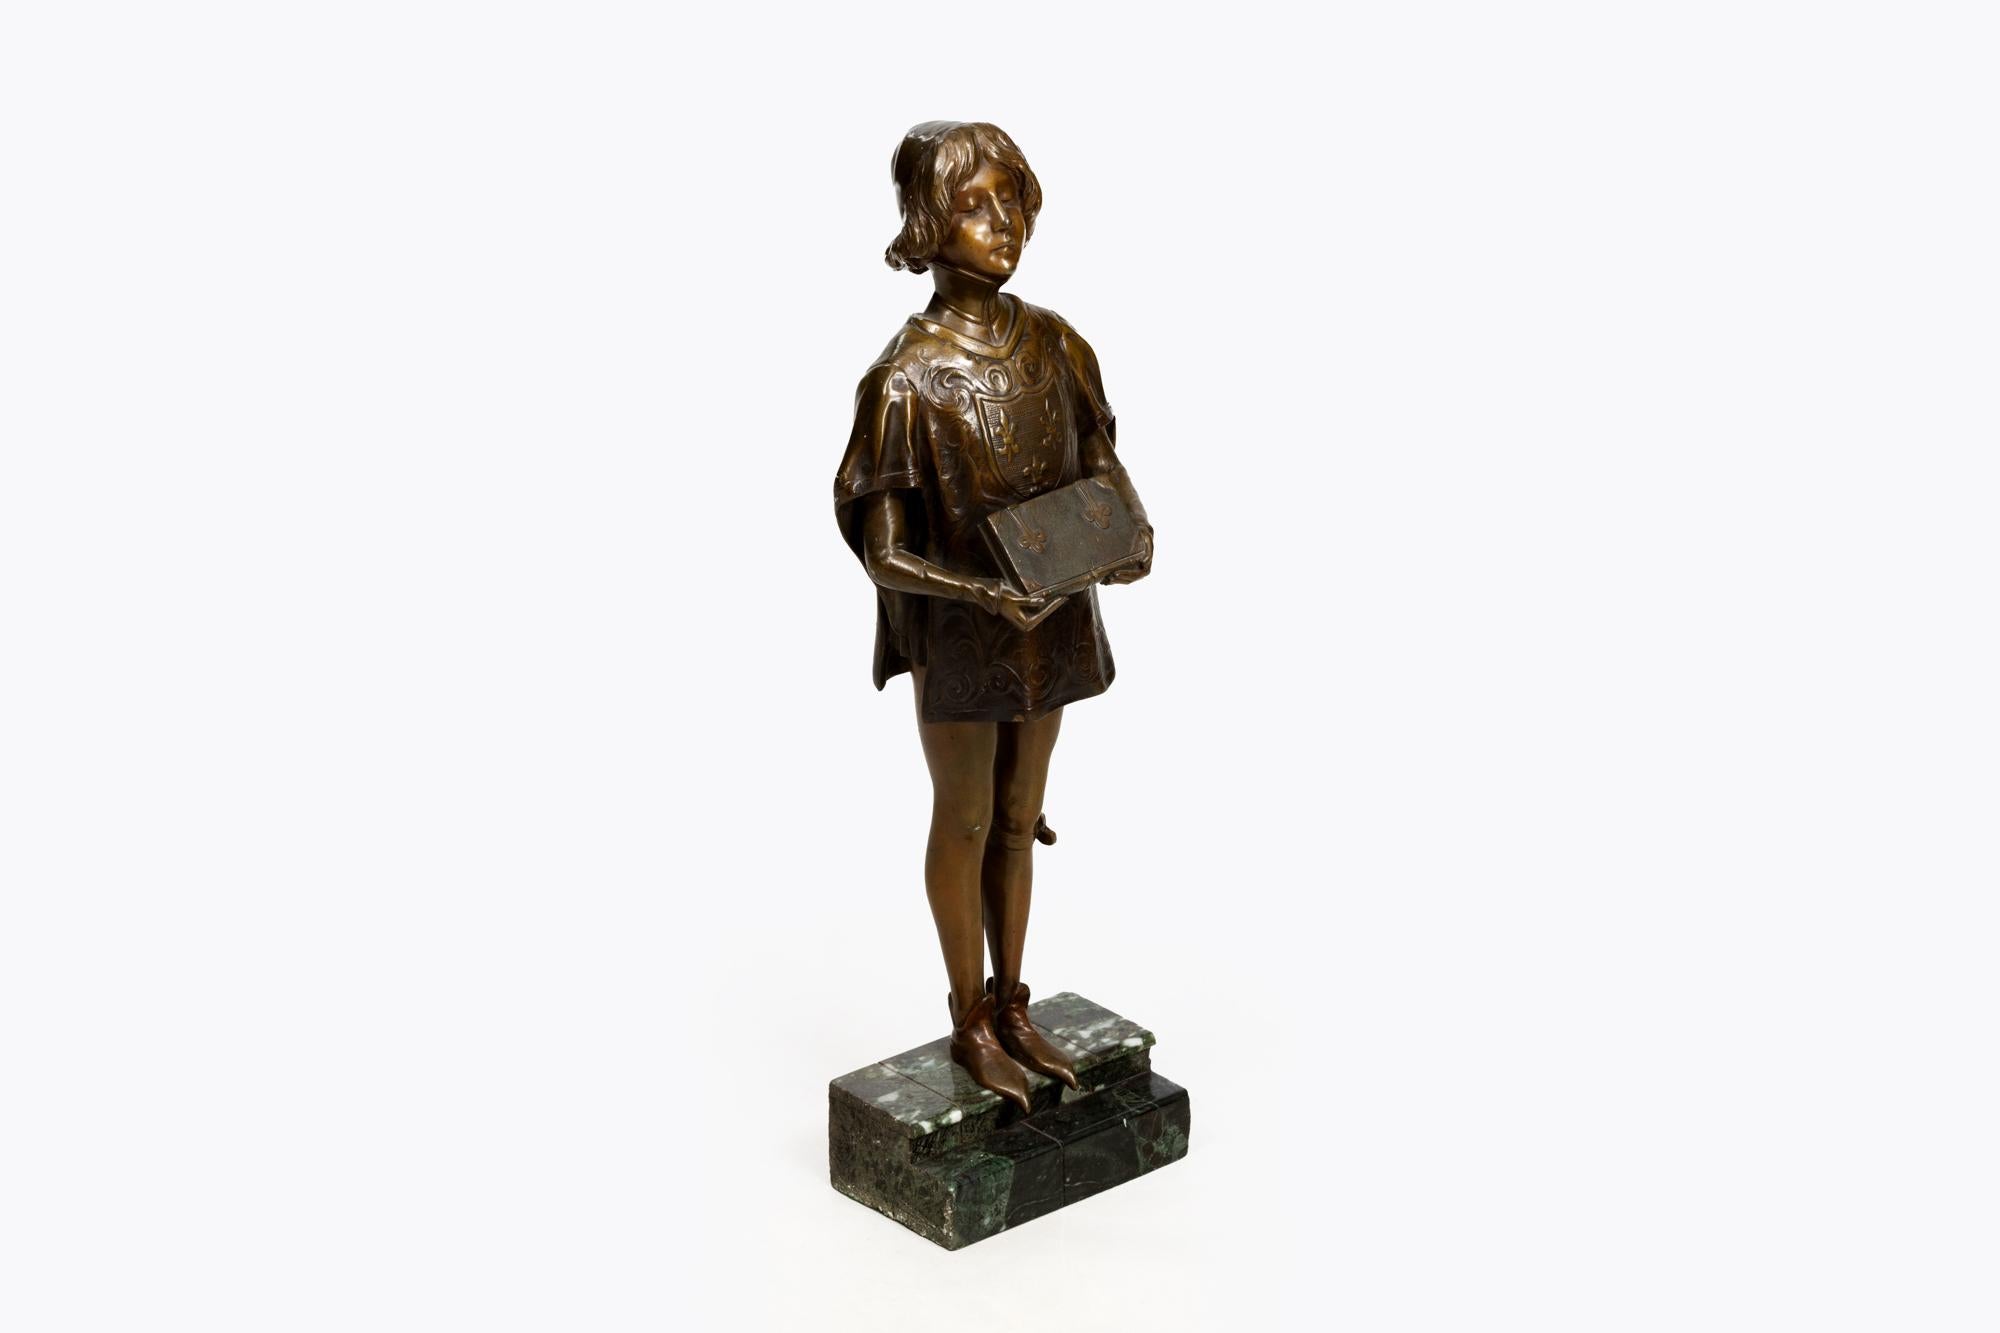 Bronzestatue aus dem 19. Jahrhundert, die einen mittelalterlichen Pagen mit einem Buch in der Hand darstellt und auf einem abgestuften rechteckigen Marmorsockel steht.